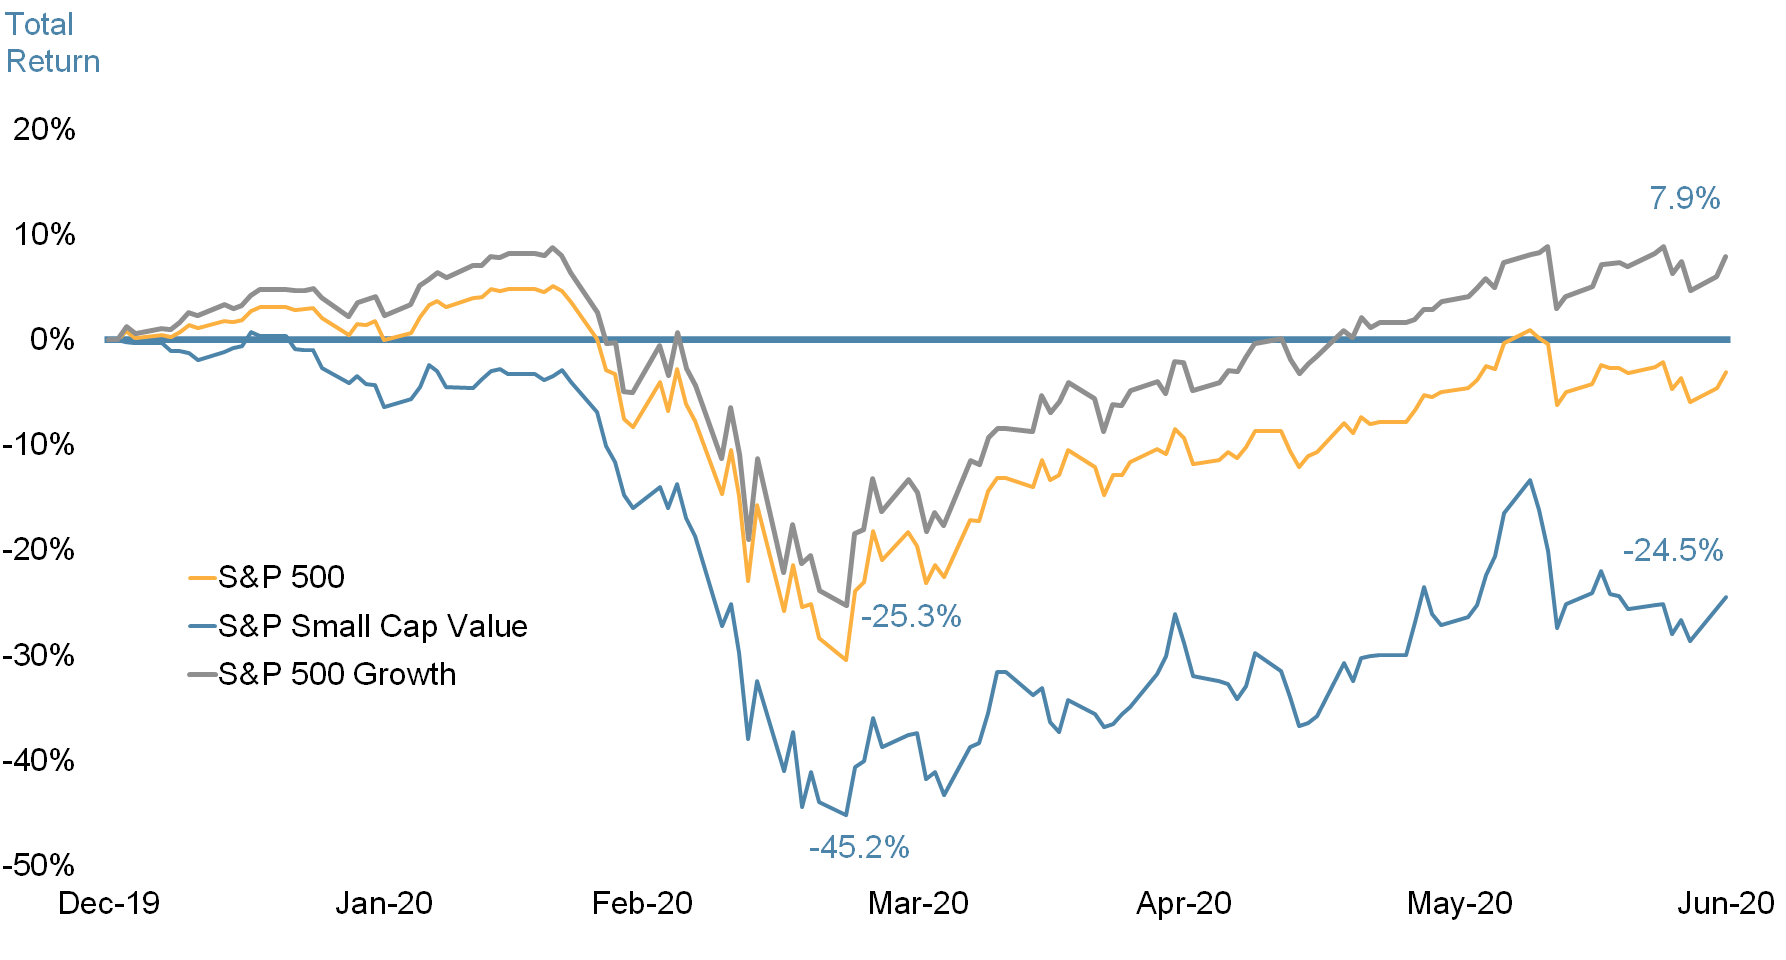 S&P Performance